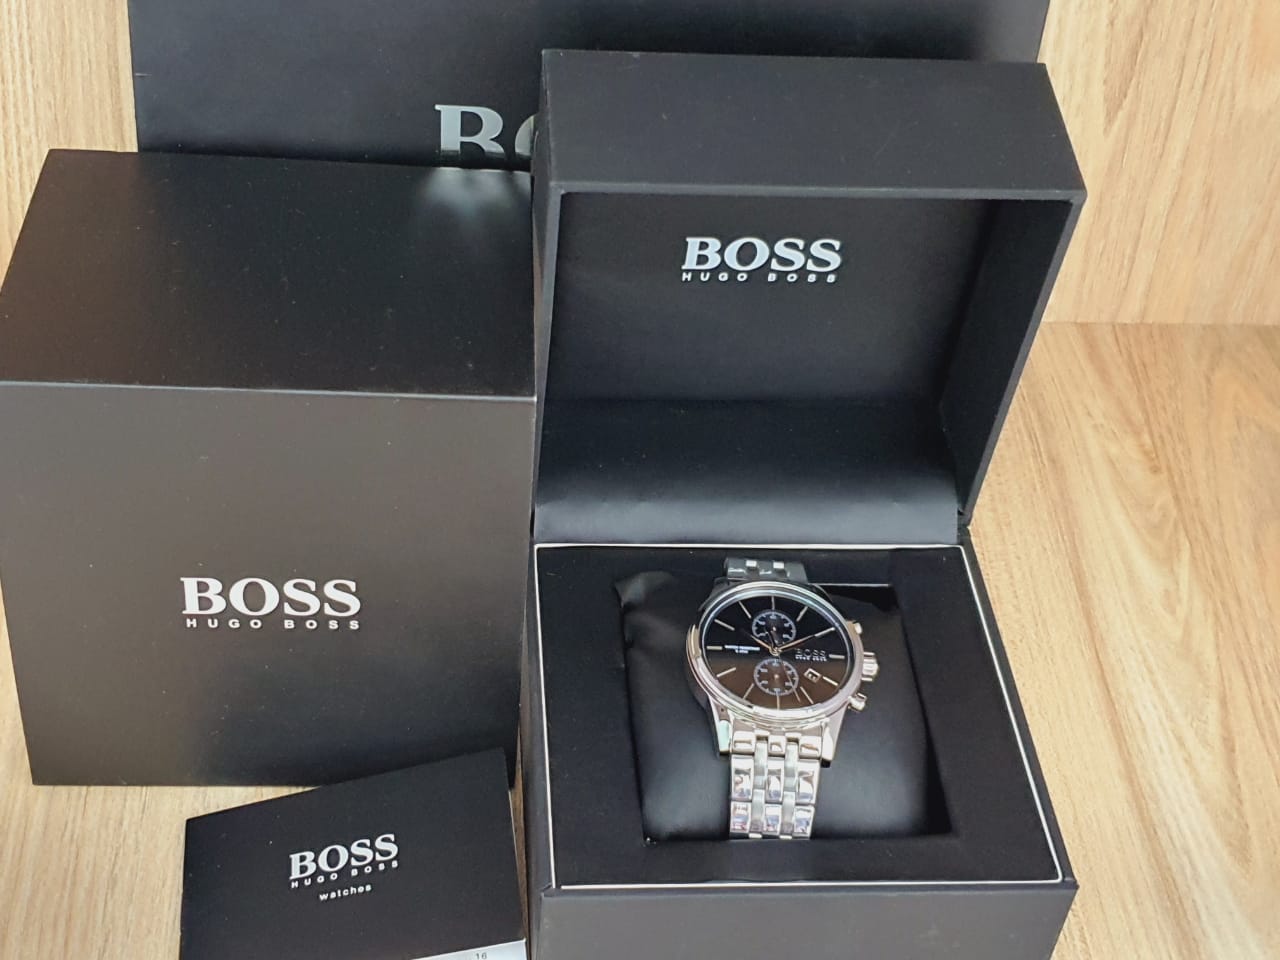 Hugo Boss Men’s Chronograph Quartz Stainless Steel Black Dial 41mm Watch 1513383